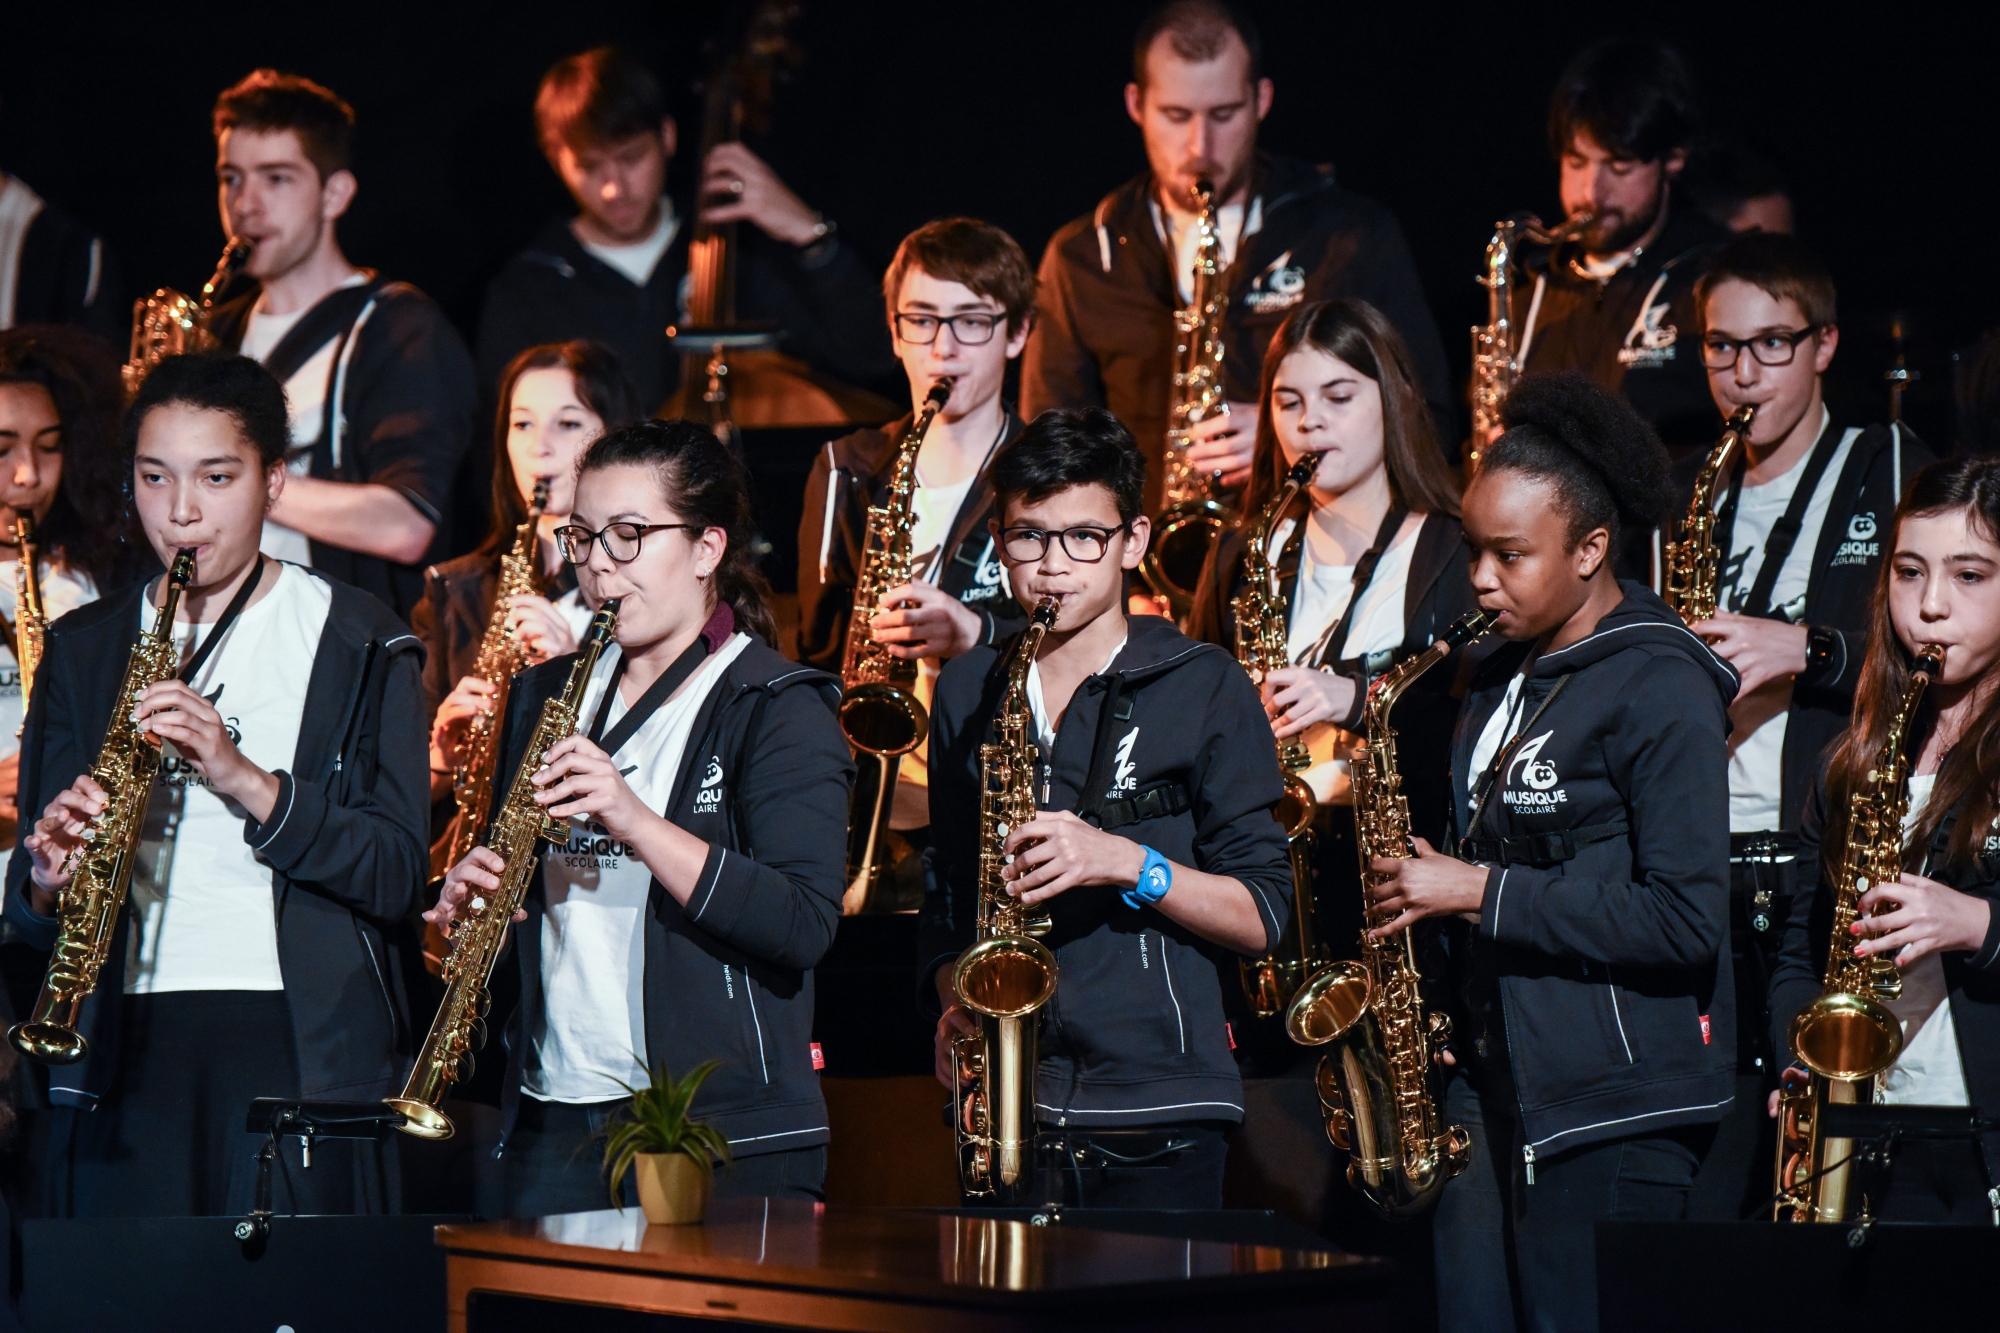 En cas de fermeture, les élèves de la Musique scolaire pourraient bénéficier d'un soutien financier de la Fondation du Conservatoire neuchâtelois.